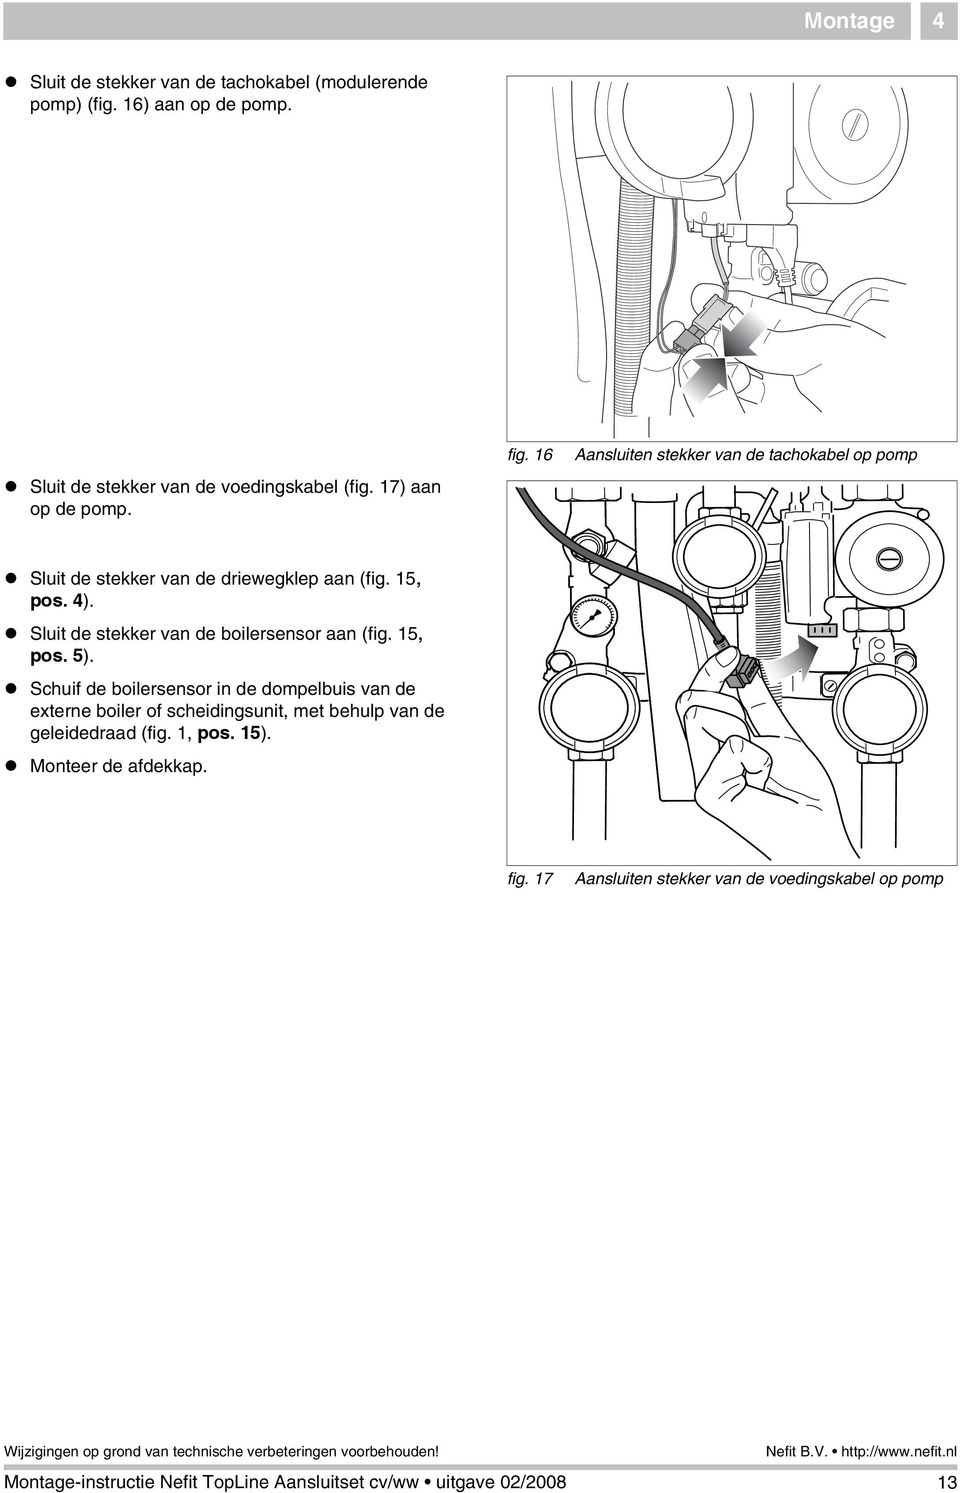 Sluit de stekker van de boilersensor aan (fig. 5, pos. 5).